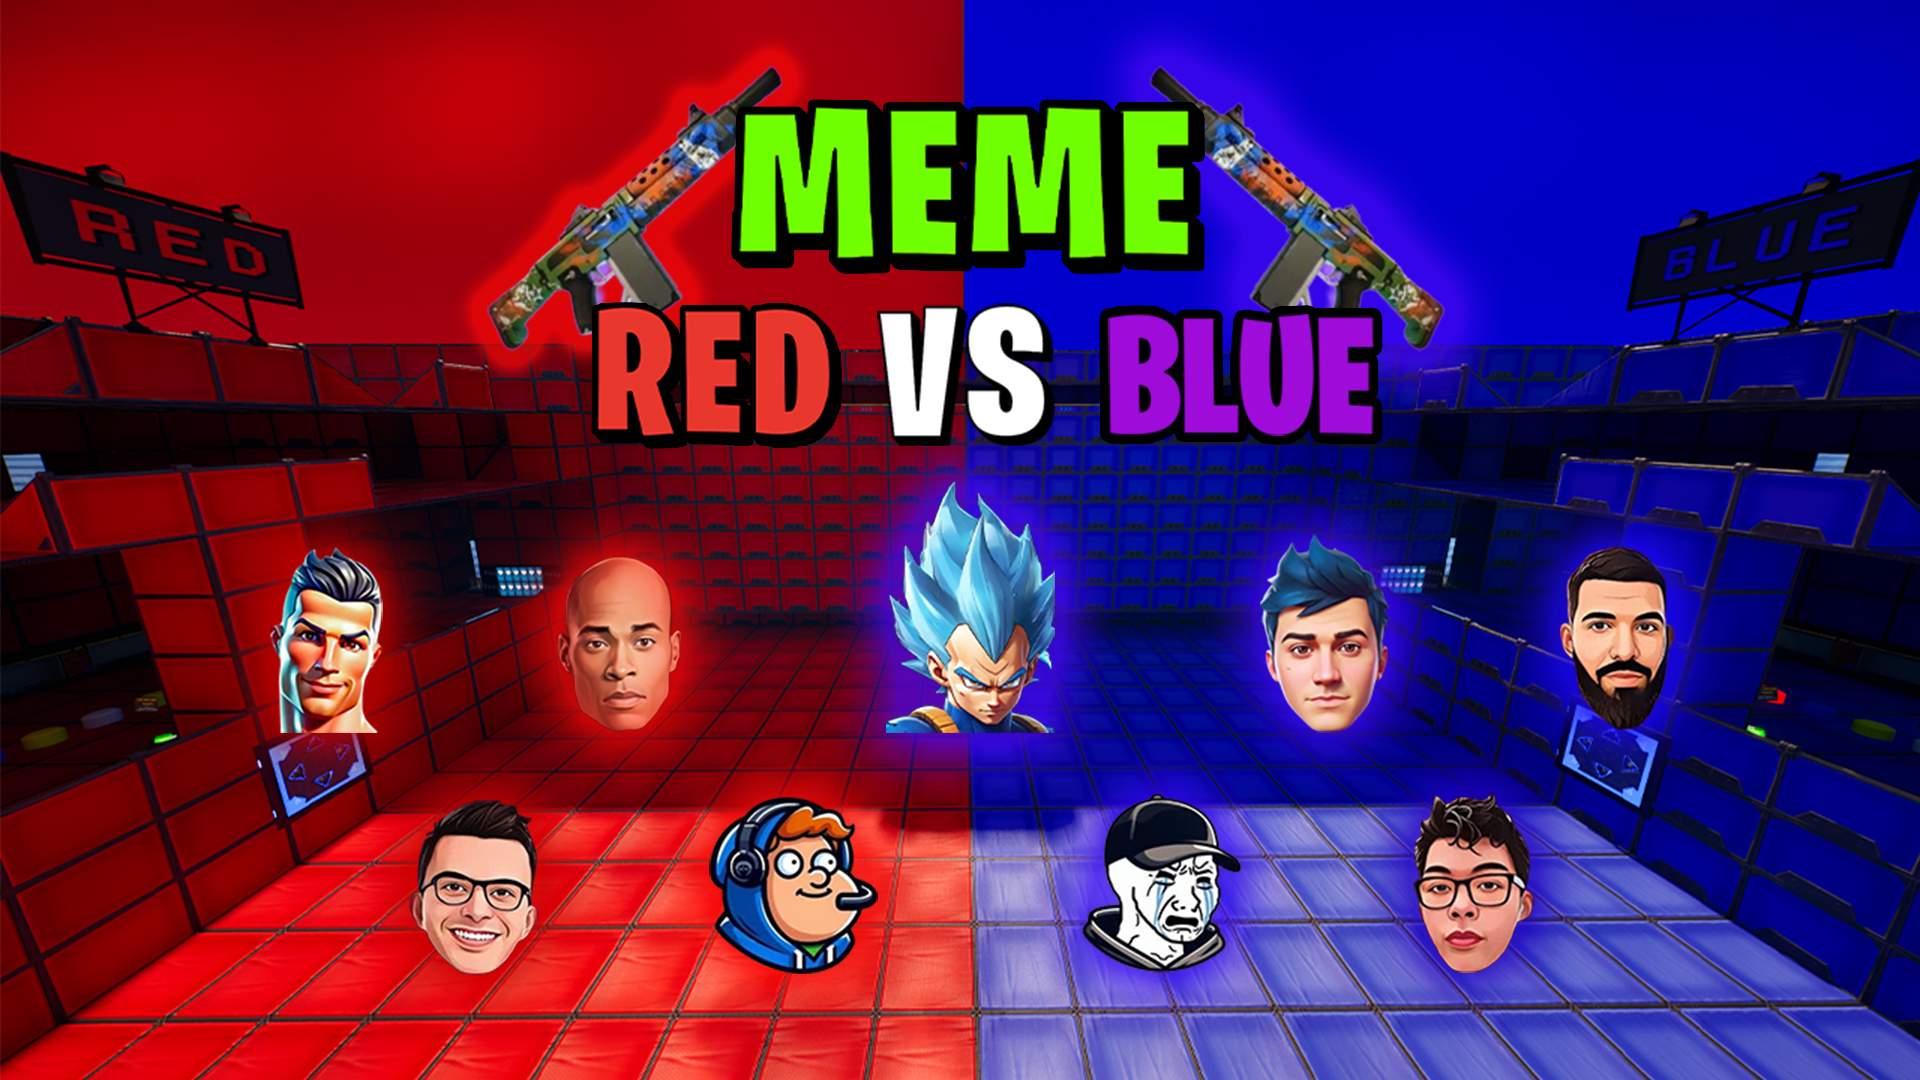 MEME RED VS BLUE